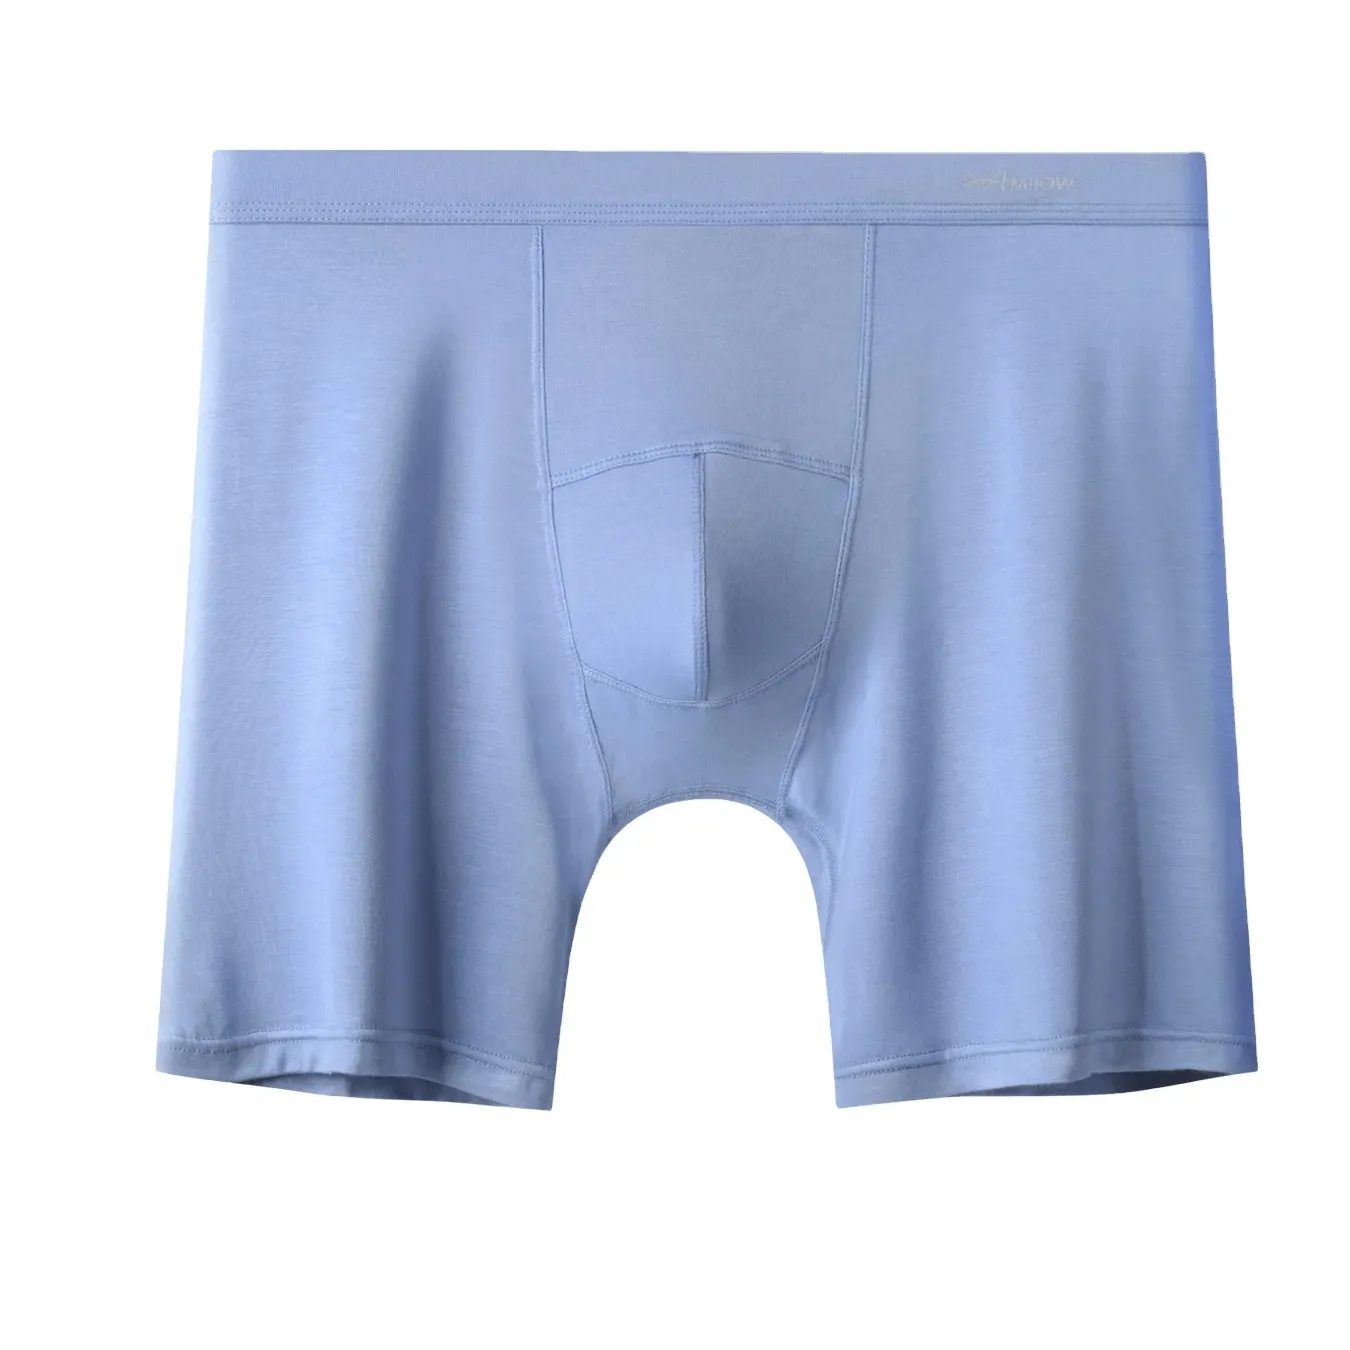 Marca própria Logo Mens Underwear Fabricante Boxer Briefs 4 Seasons Underwear Boxer Curto Comprimento Mens Boxers para Juventude